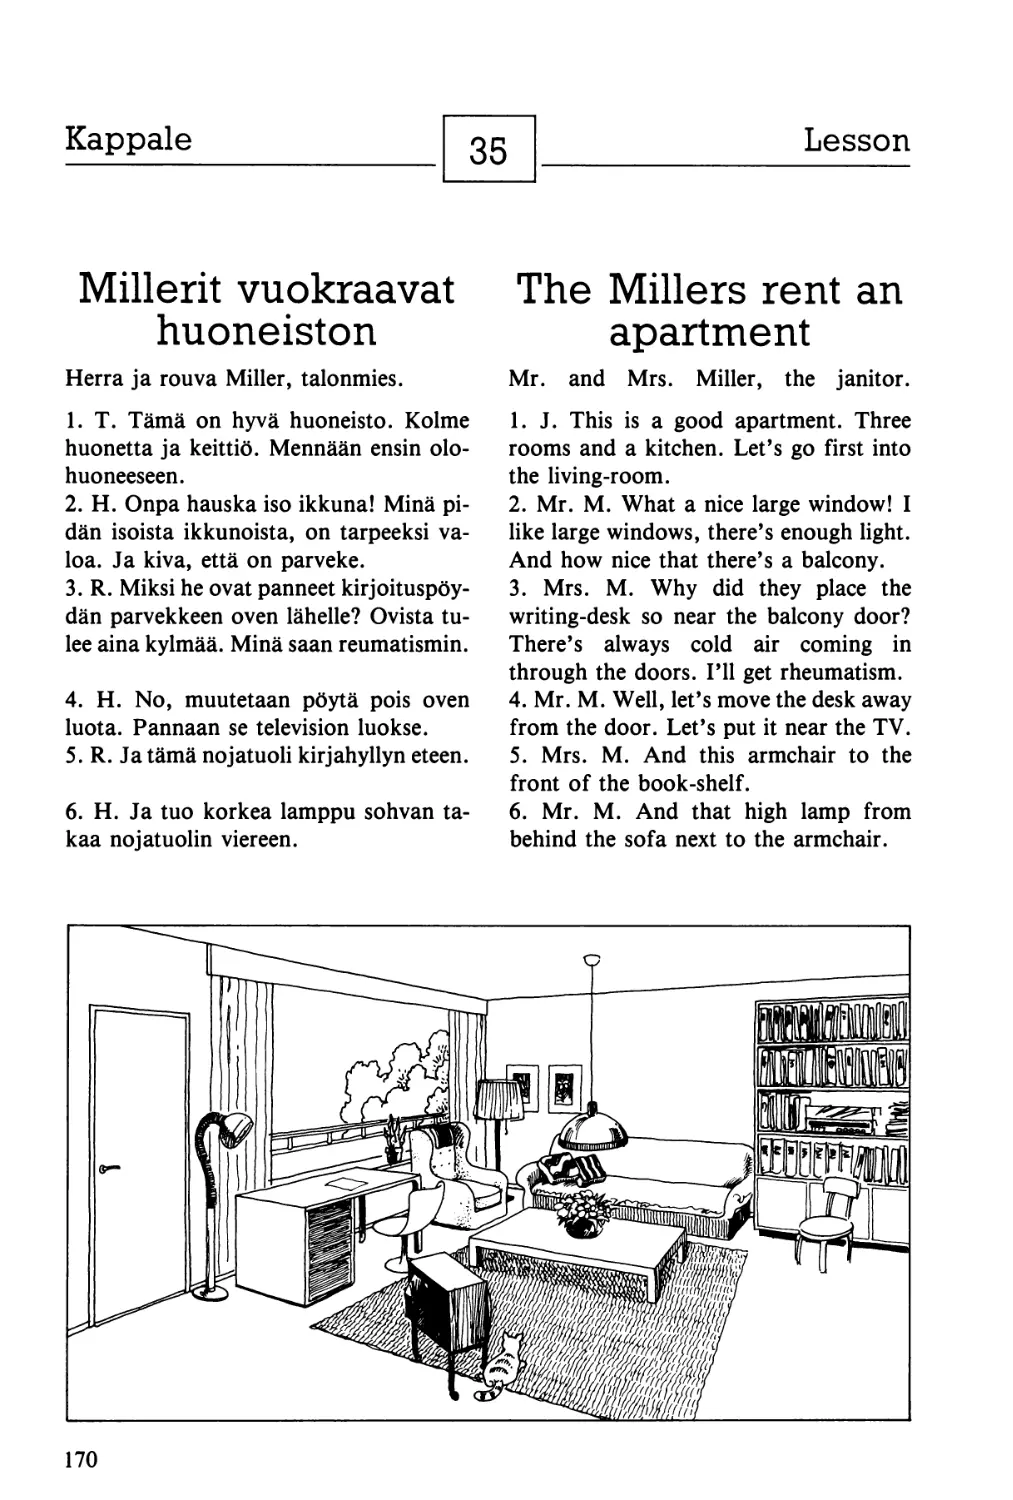 35. Millerit vuokraavat huoneiston — The Millers rent an apartment